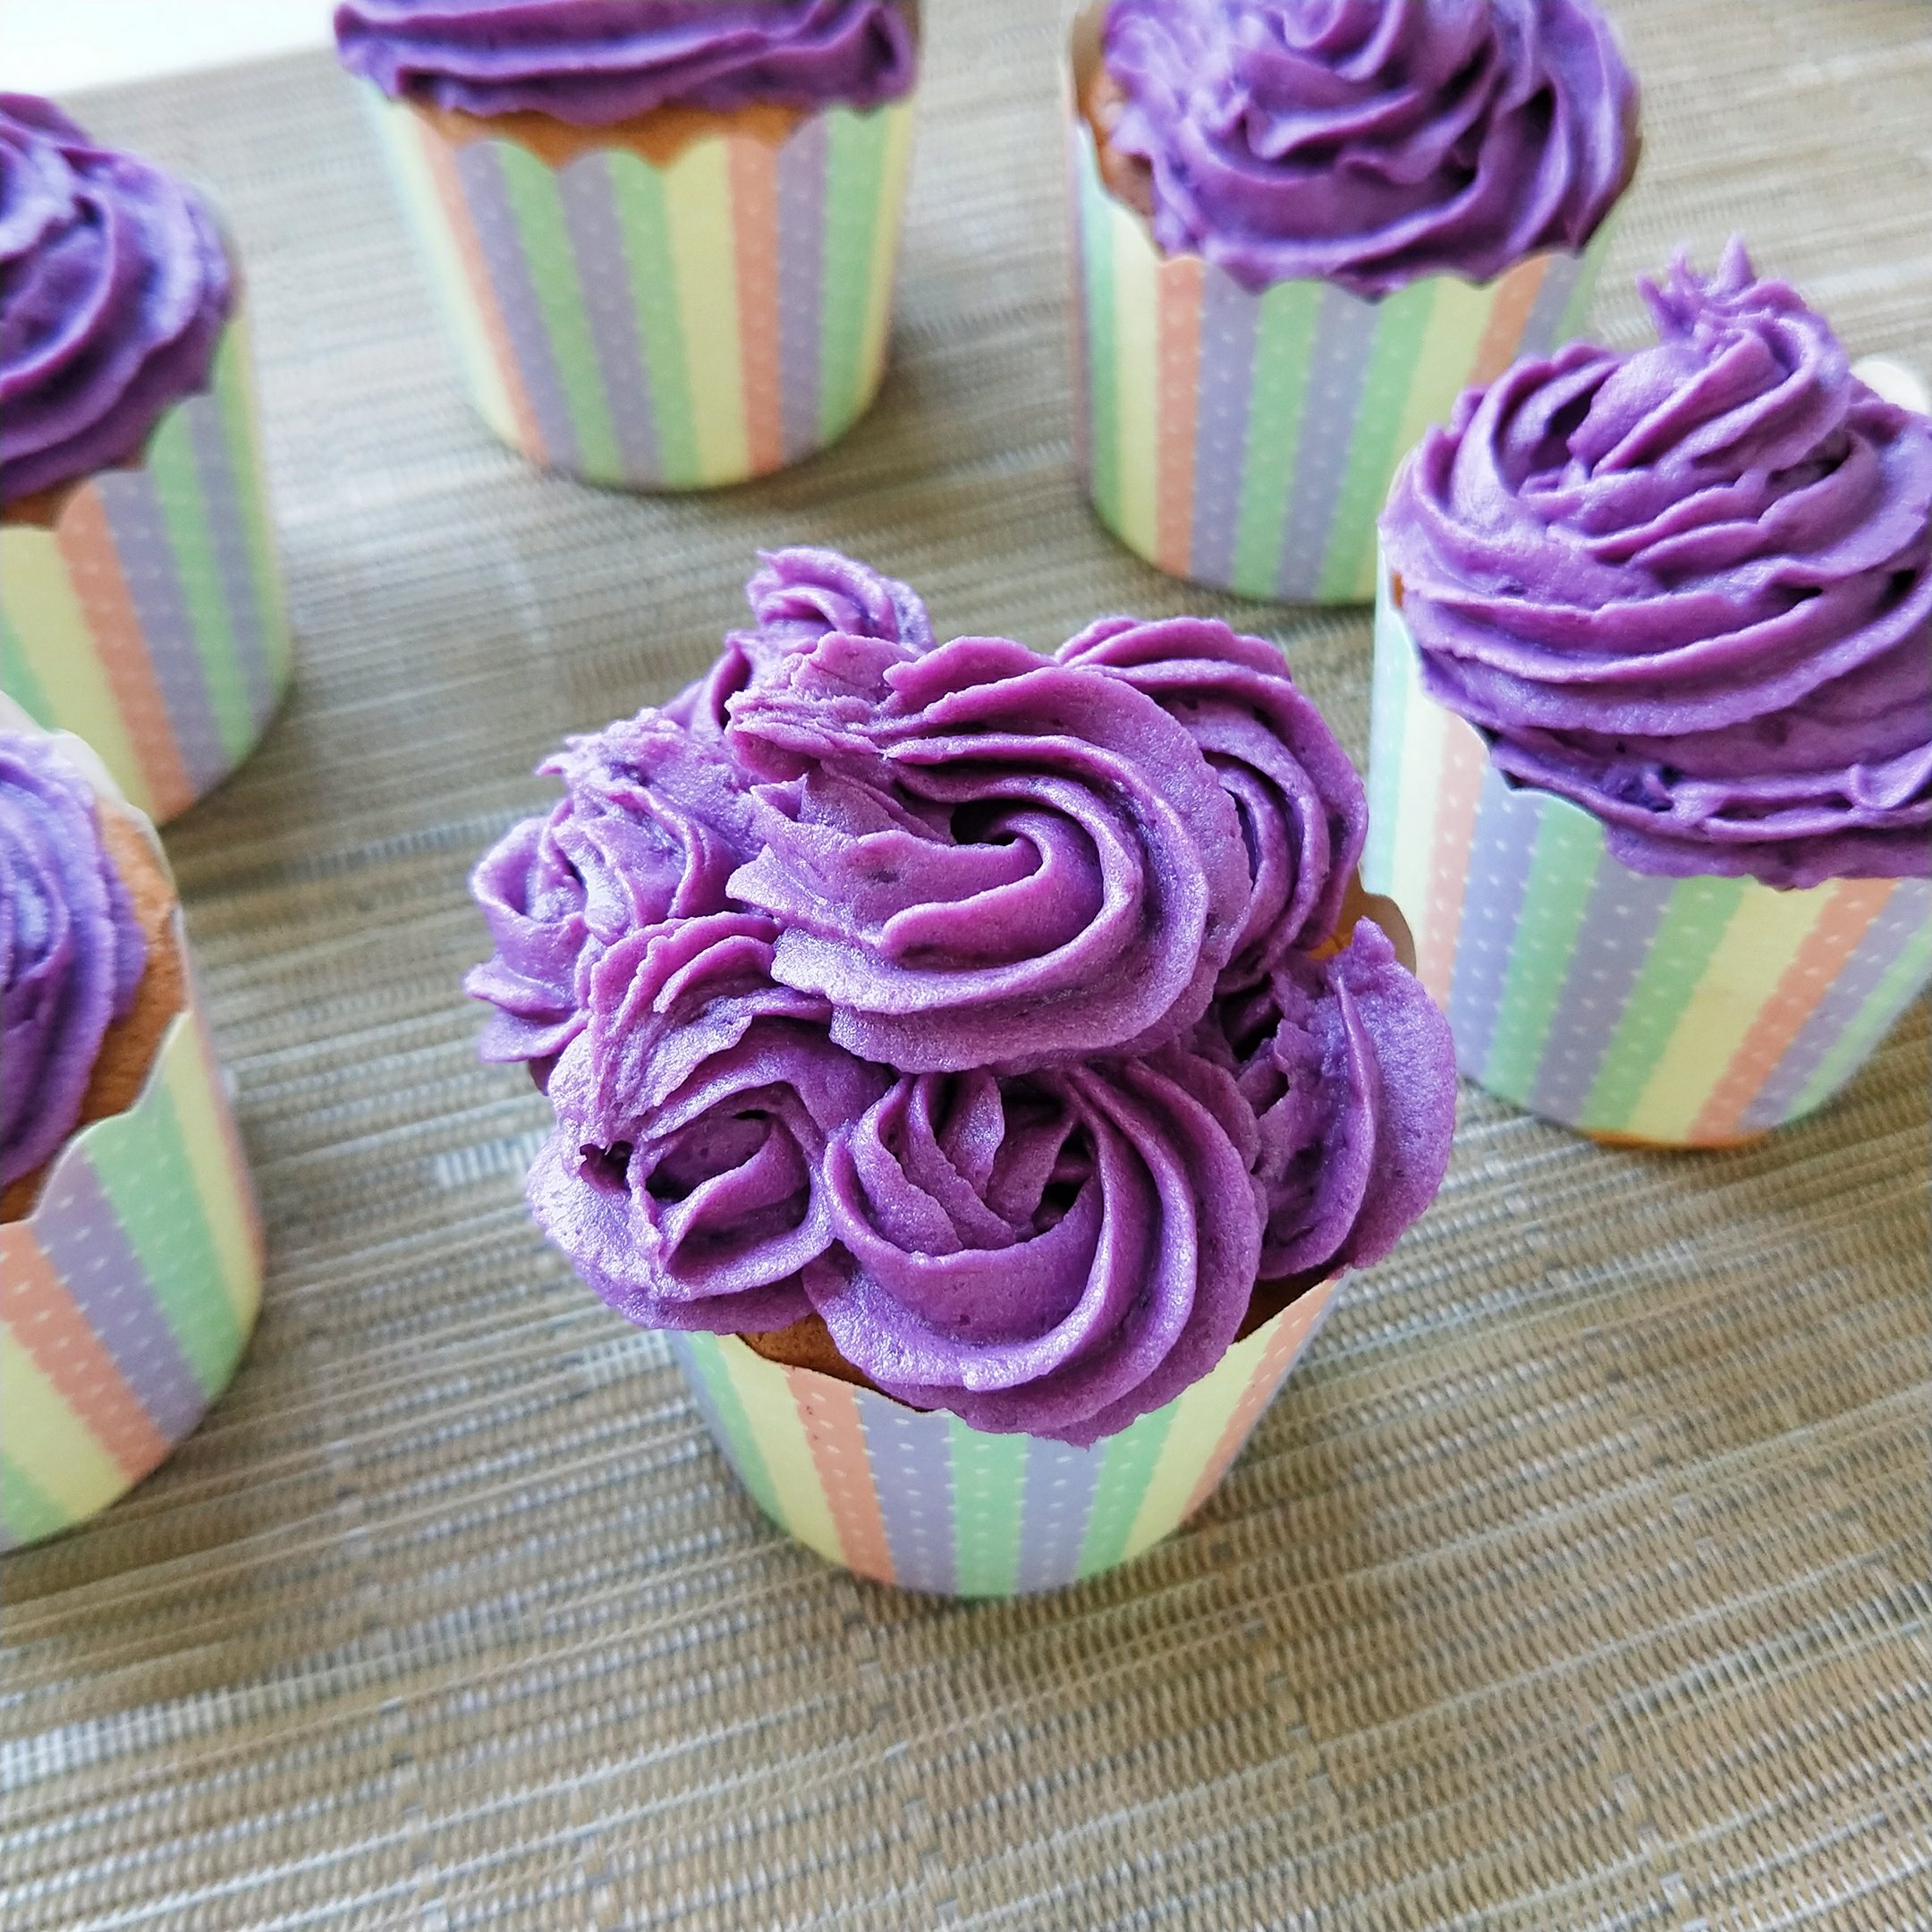 紫薯杯子蛋糕